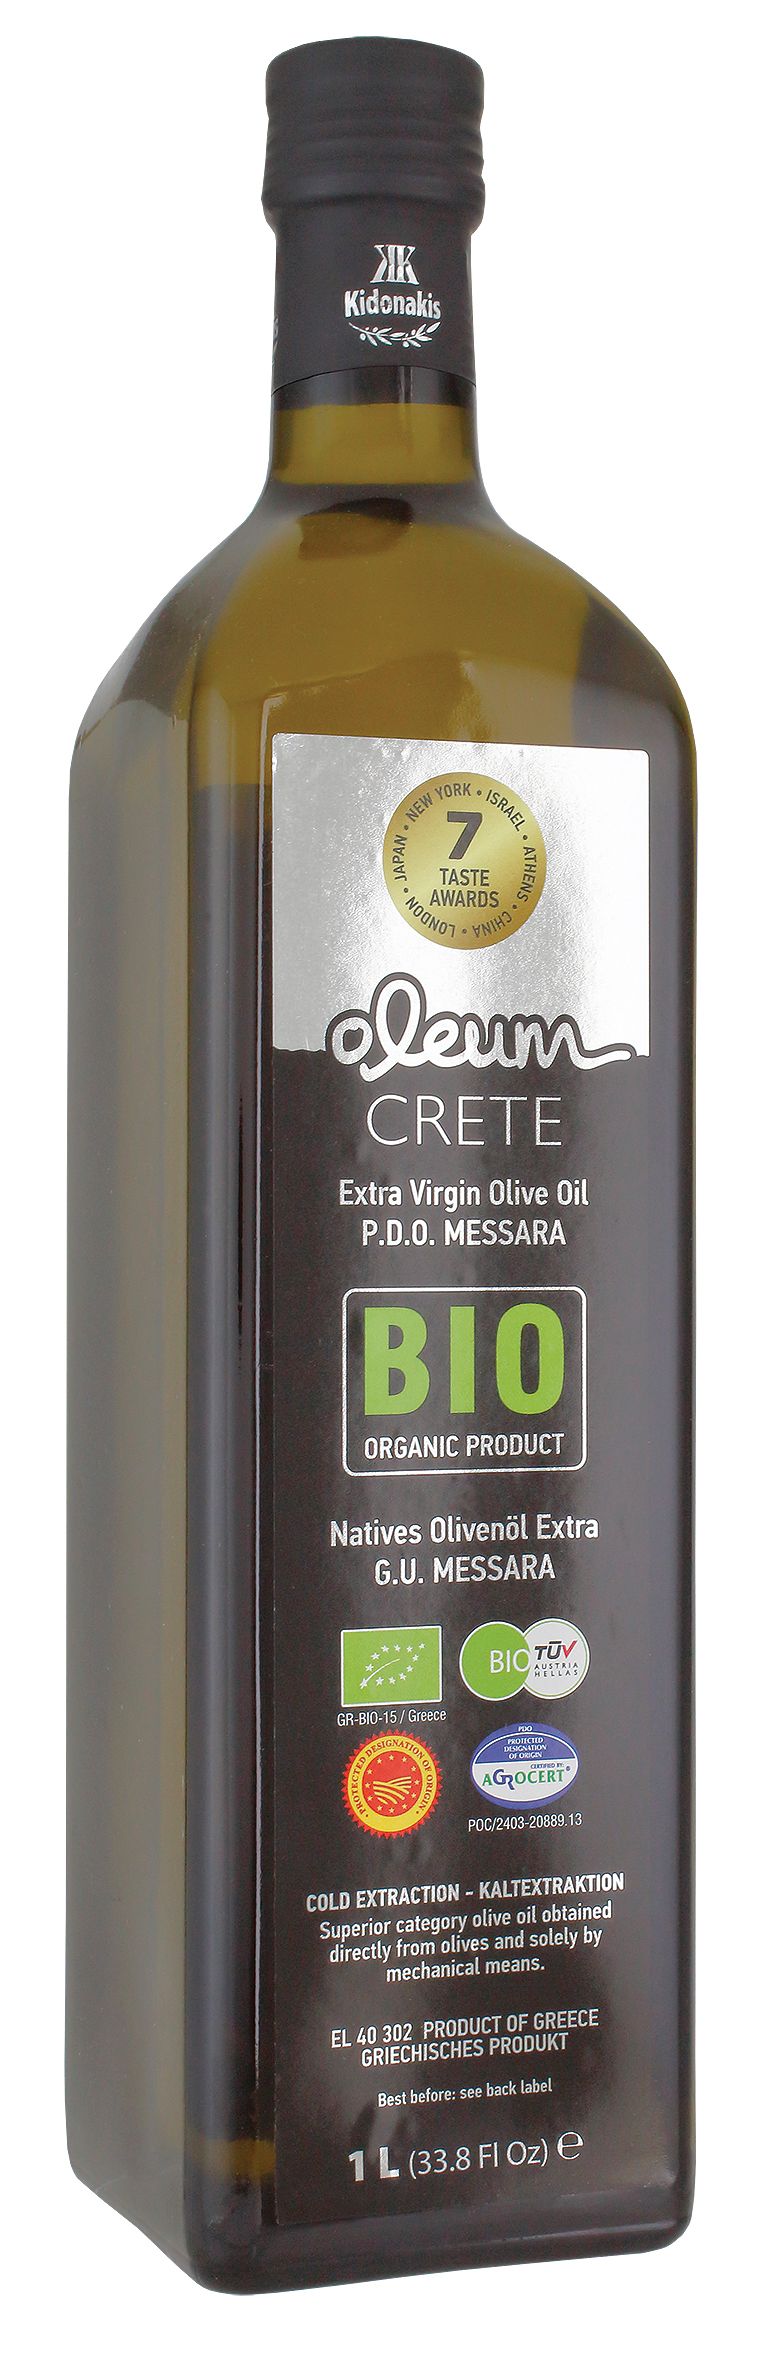 Extra Natives Koroneiki Olivenöl Bio 80 Preise P.D.O. Messara Oleum Crete 100ml - 1L Glas